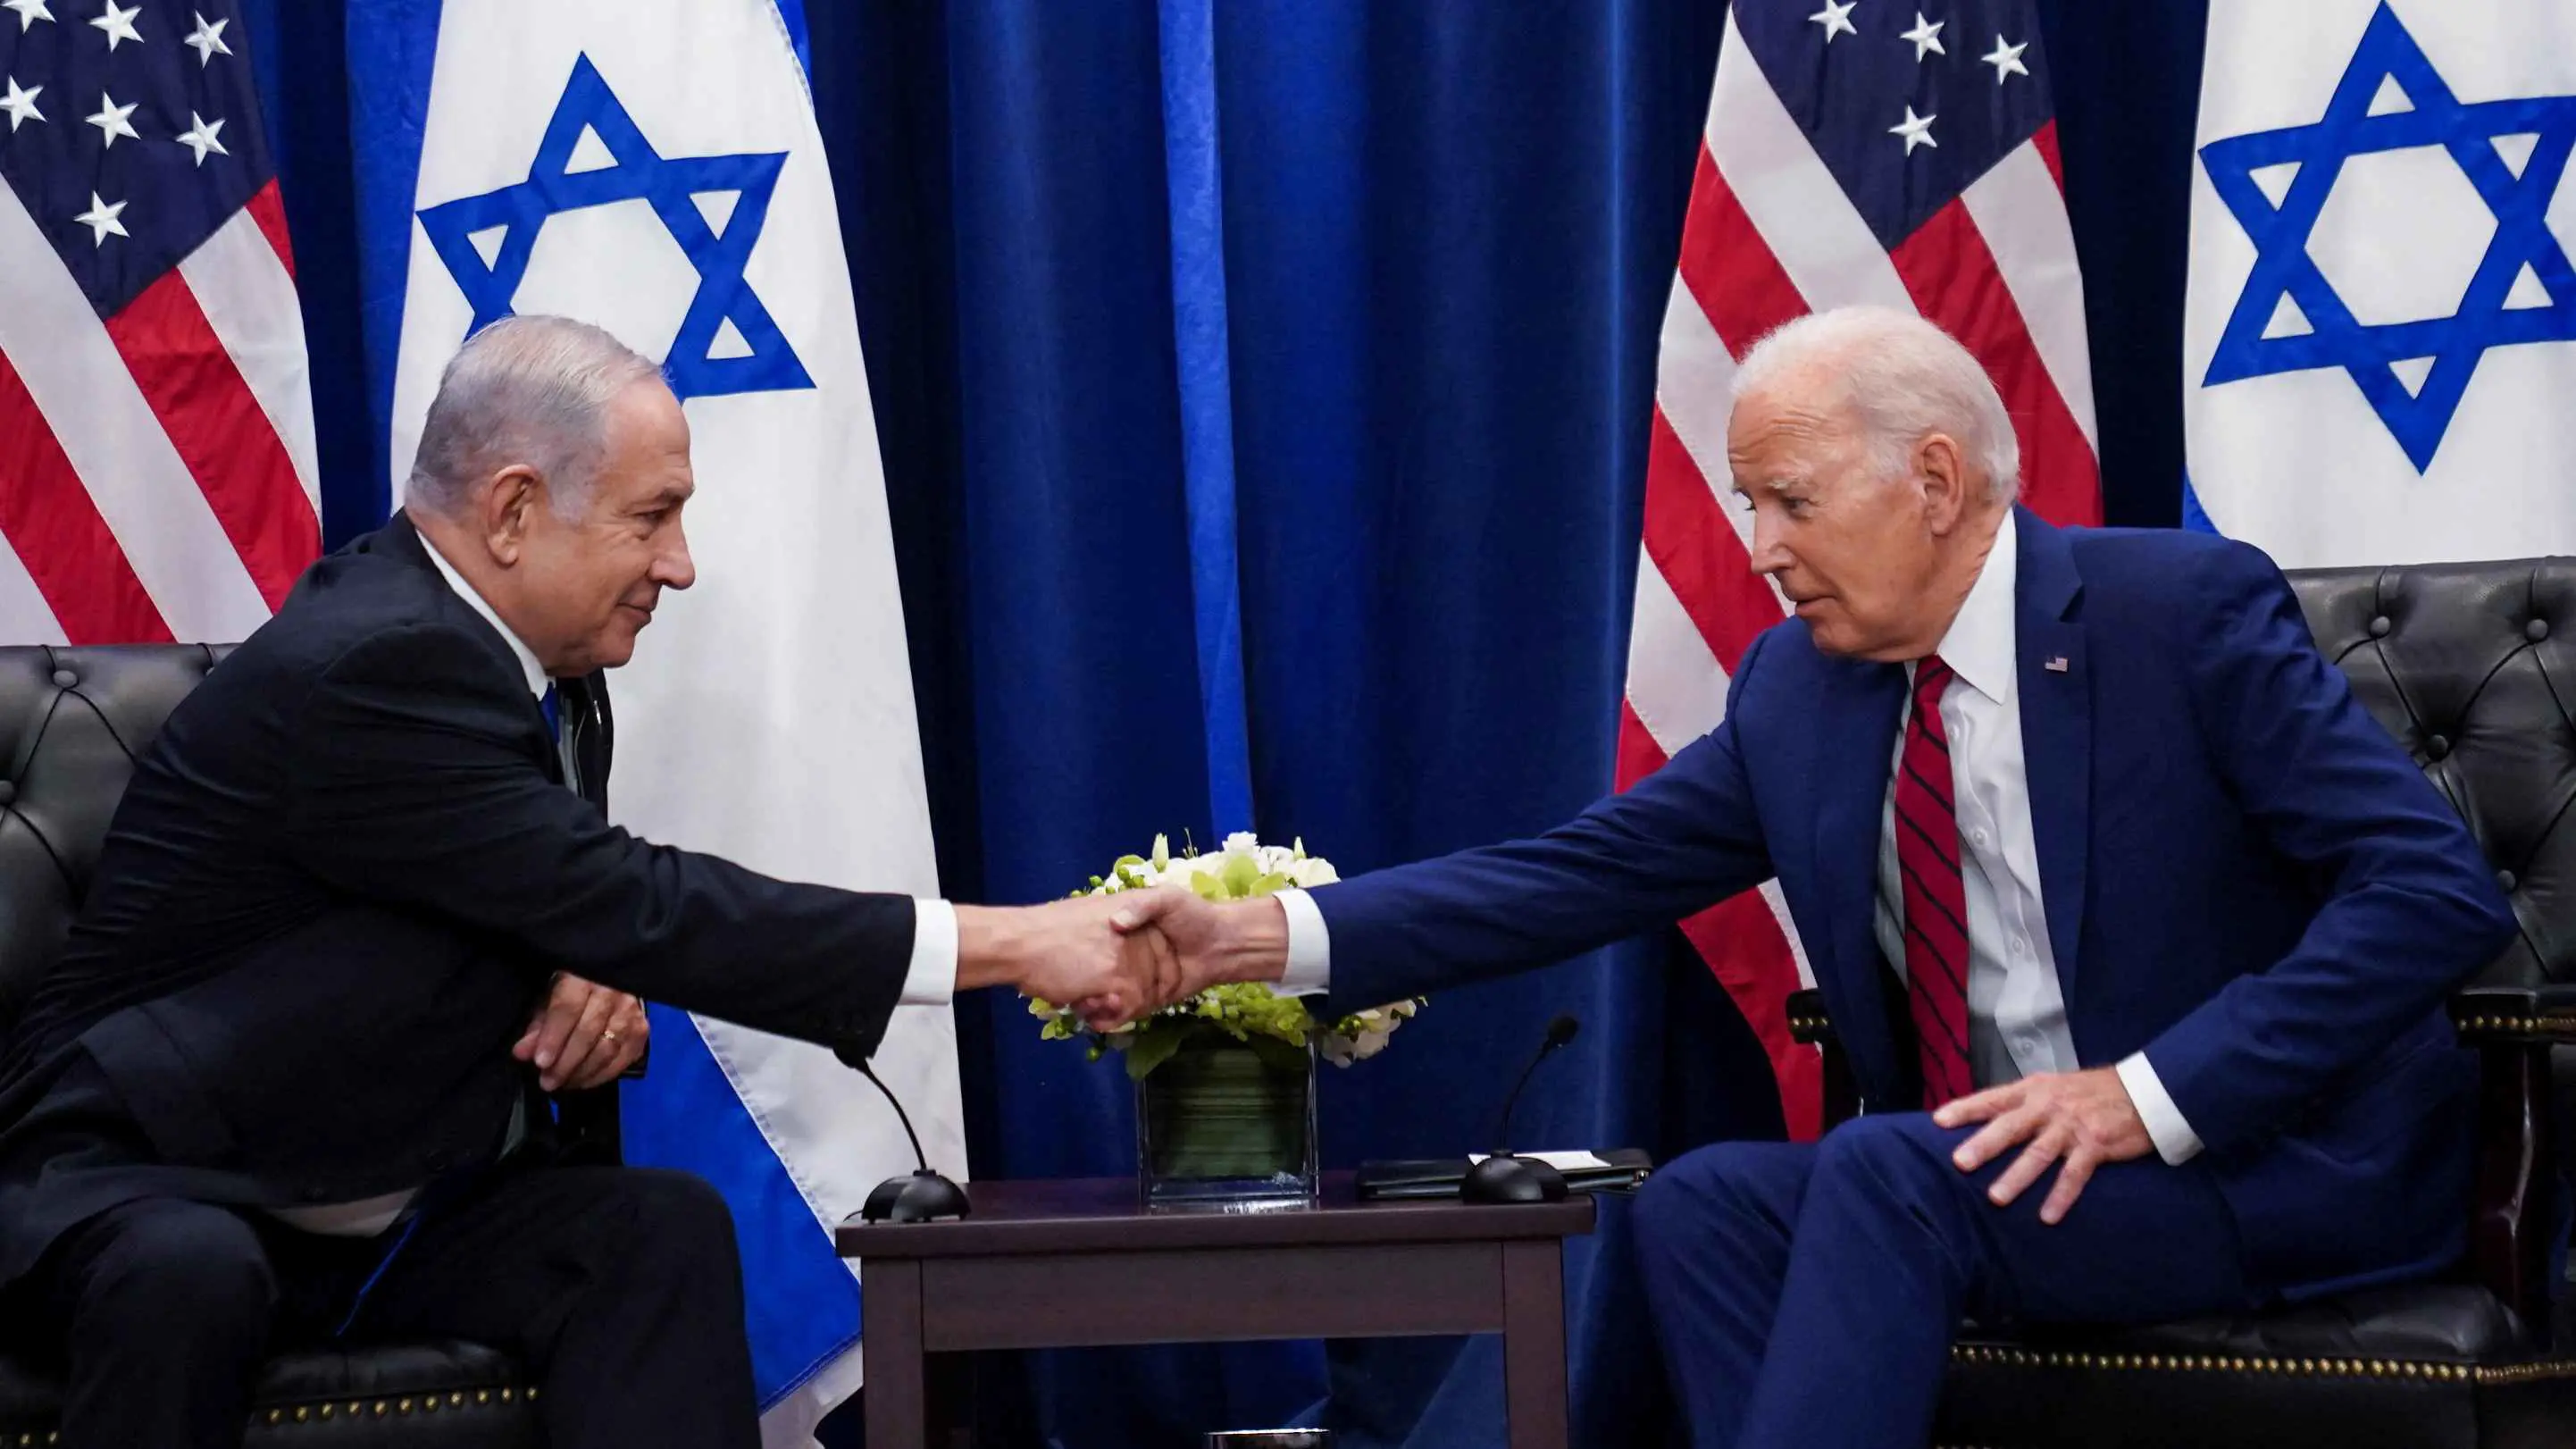 البيت الأبيض يكشف كواليس اتصال بين بايدن ونتنياهو بشأن غزة